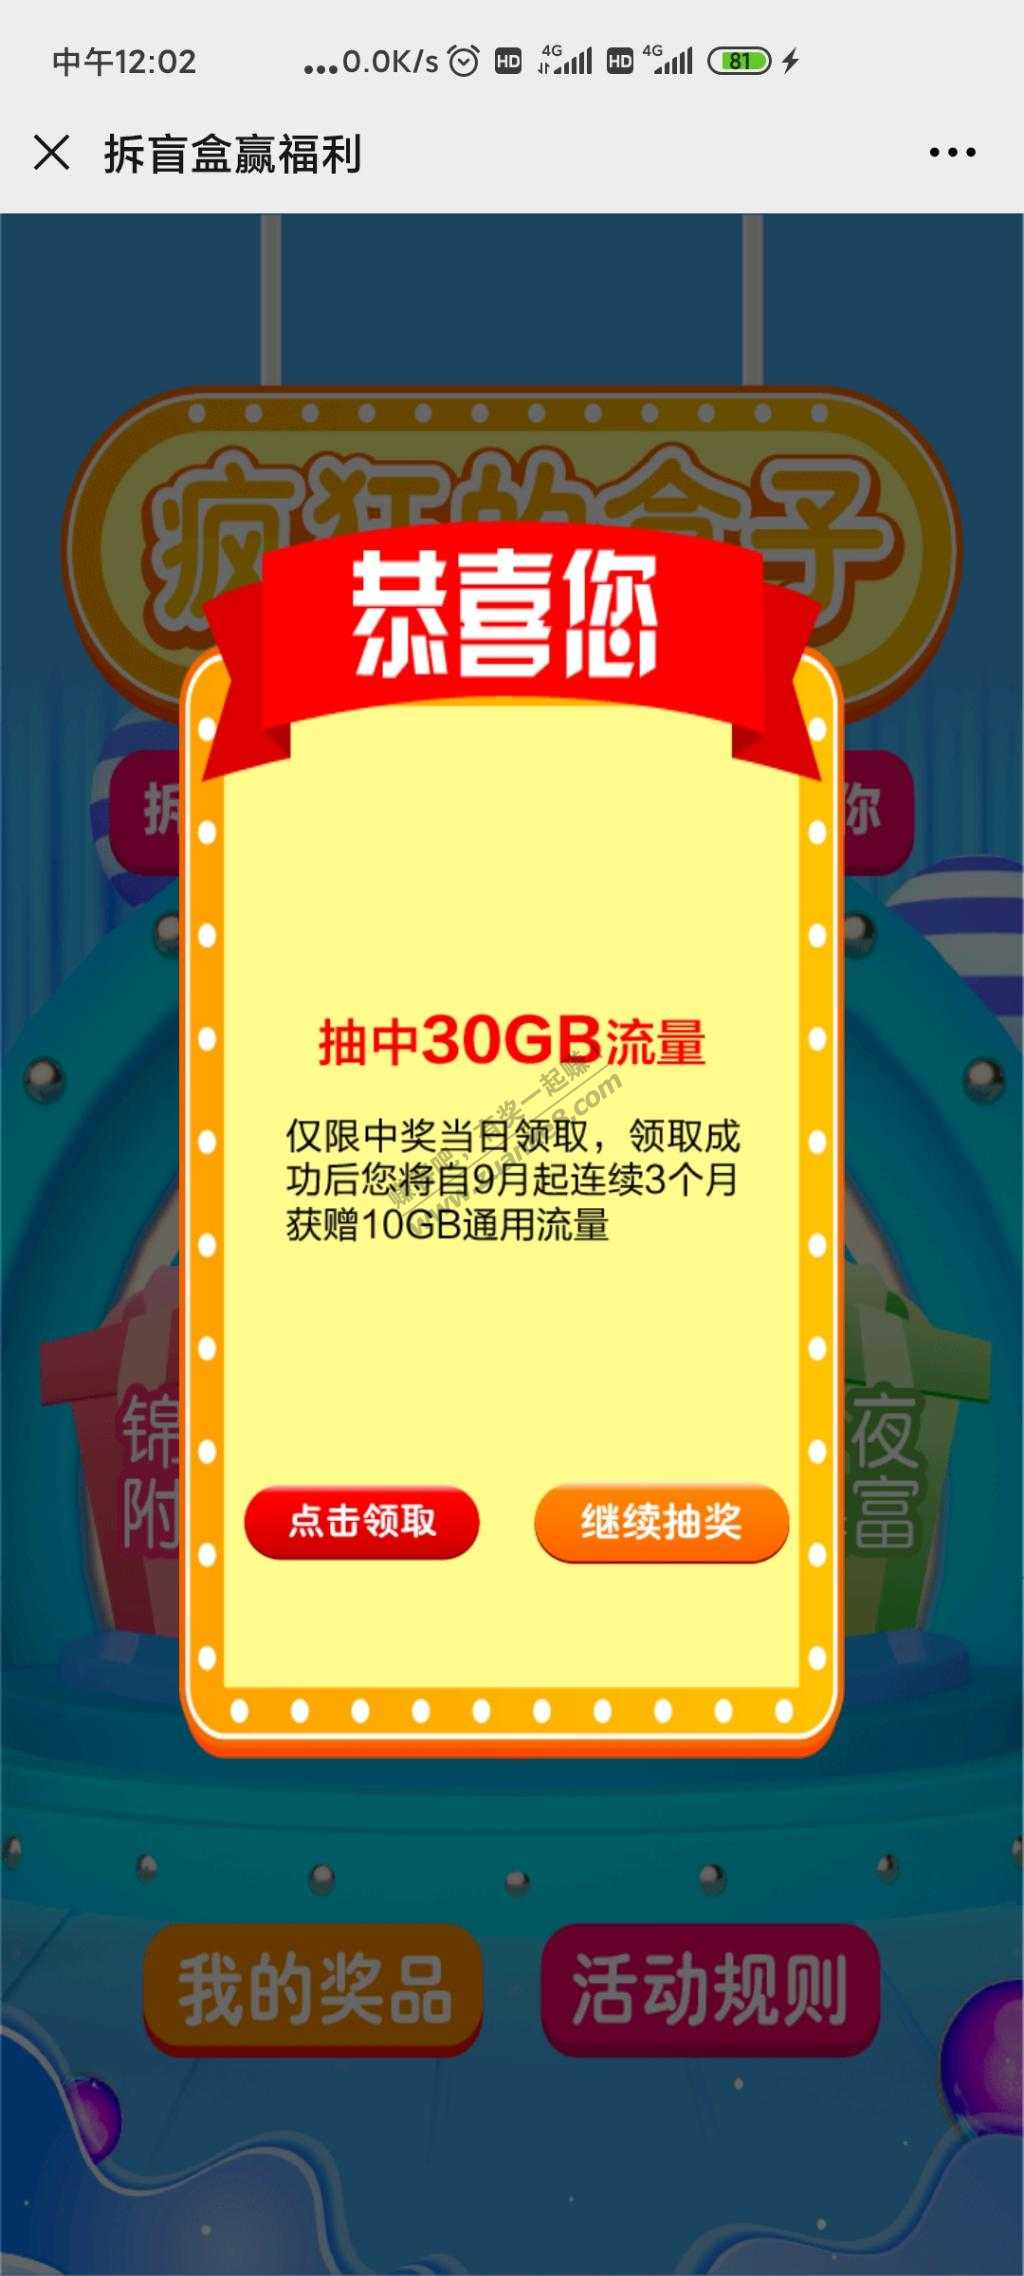 南京移动-30G流量季包-惠小助(52huixz.com)